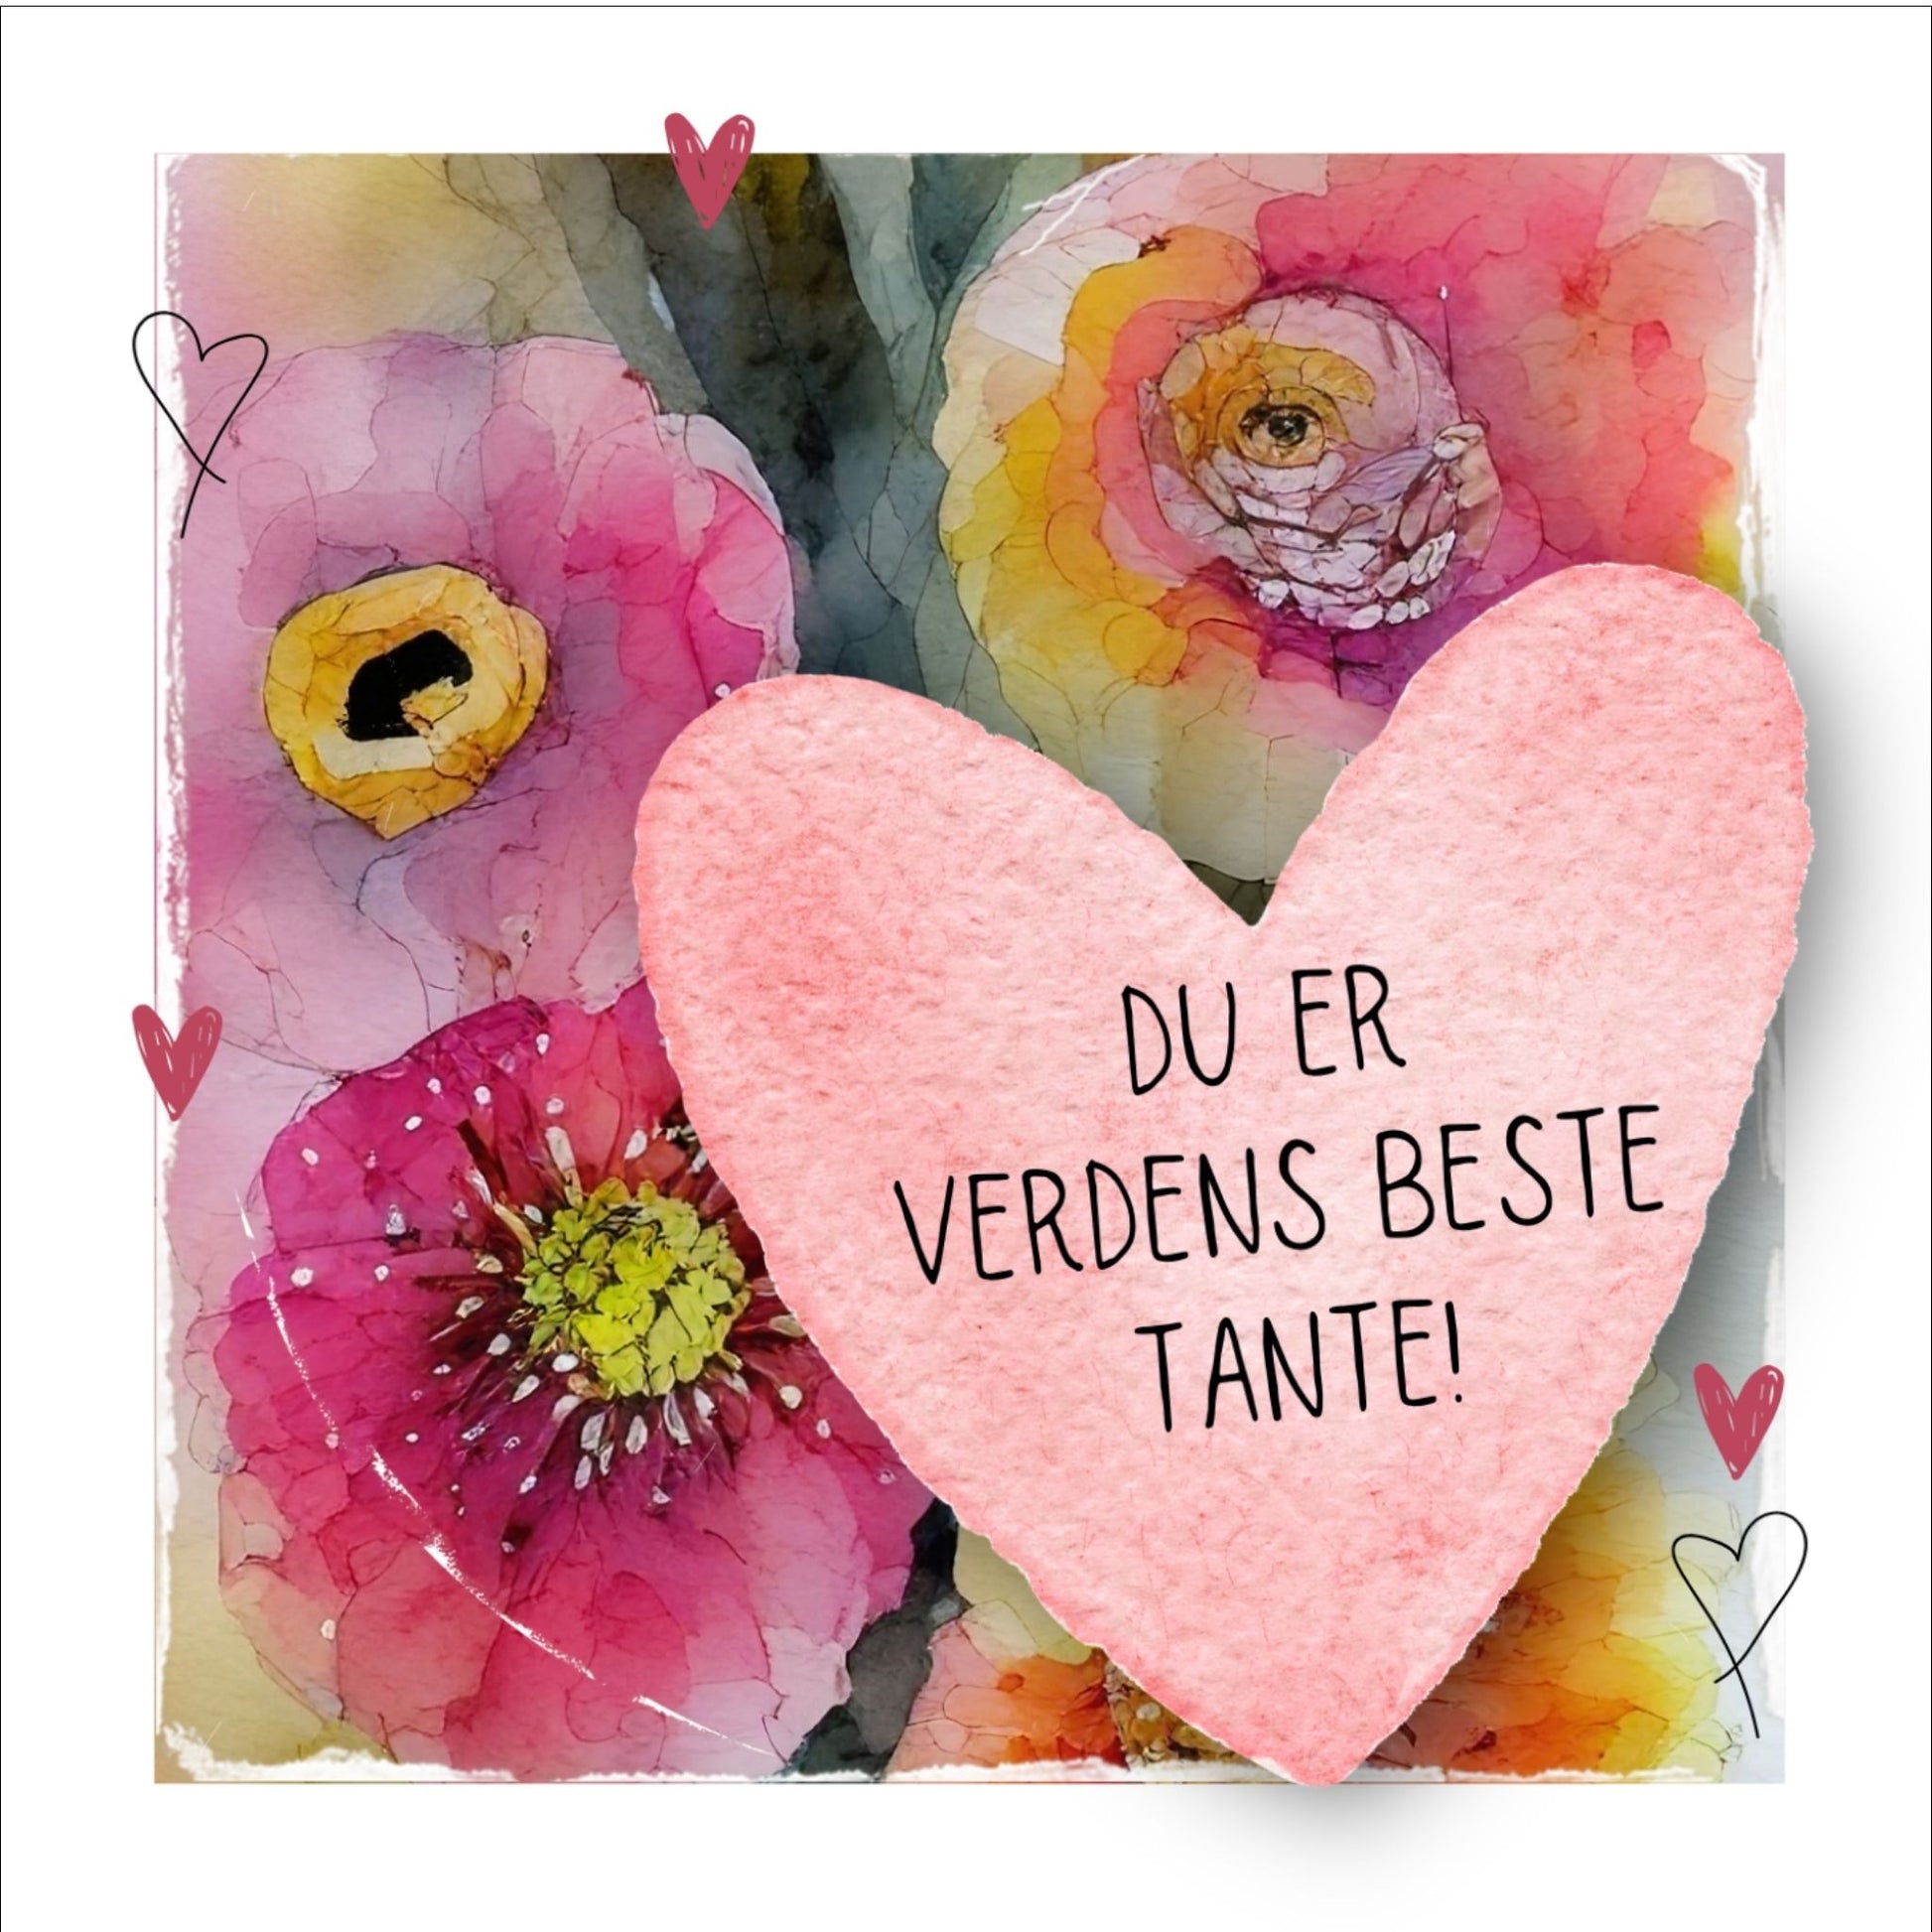 Grafisk plakat med et rosa hjerte påført tekst "Du er verdens beste tante!". Bagrunn i cerise og guloransje blomster. Kortet har en hvit kant rundt på 1,5 cm.